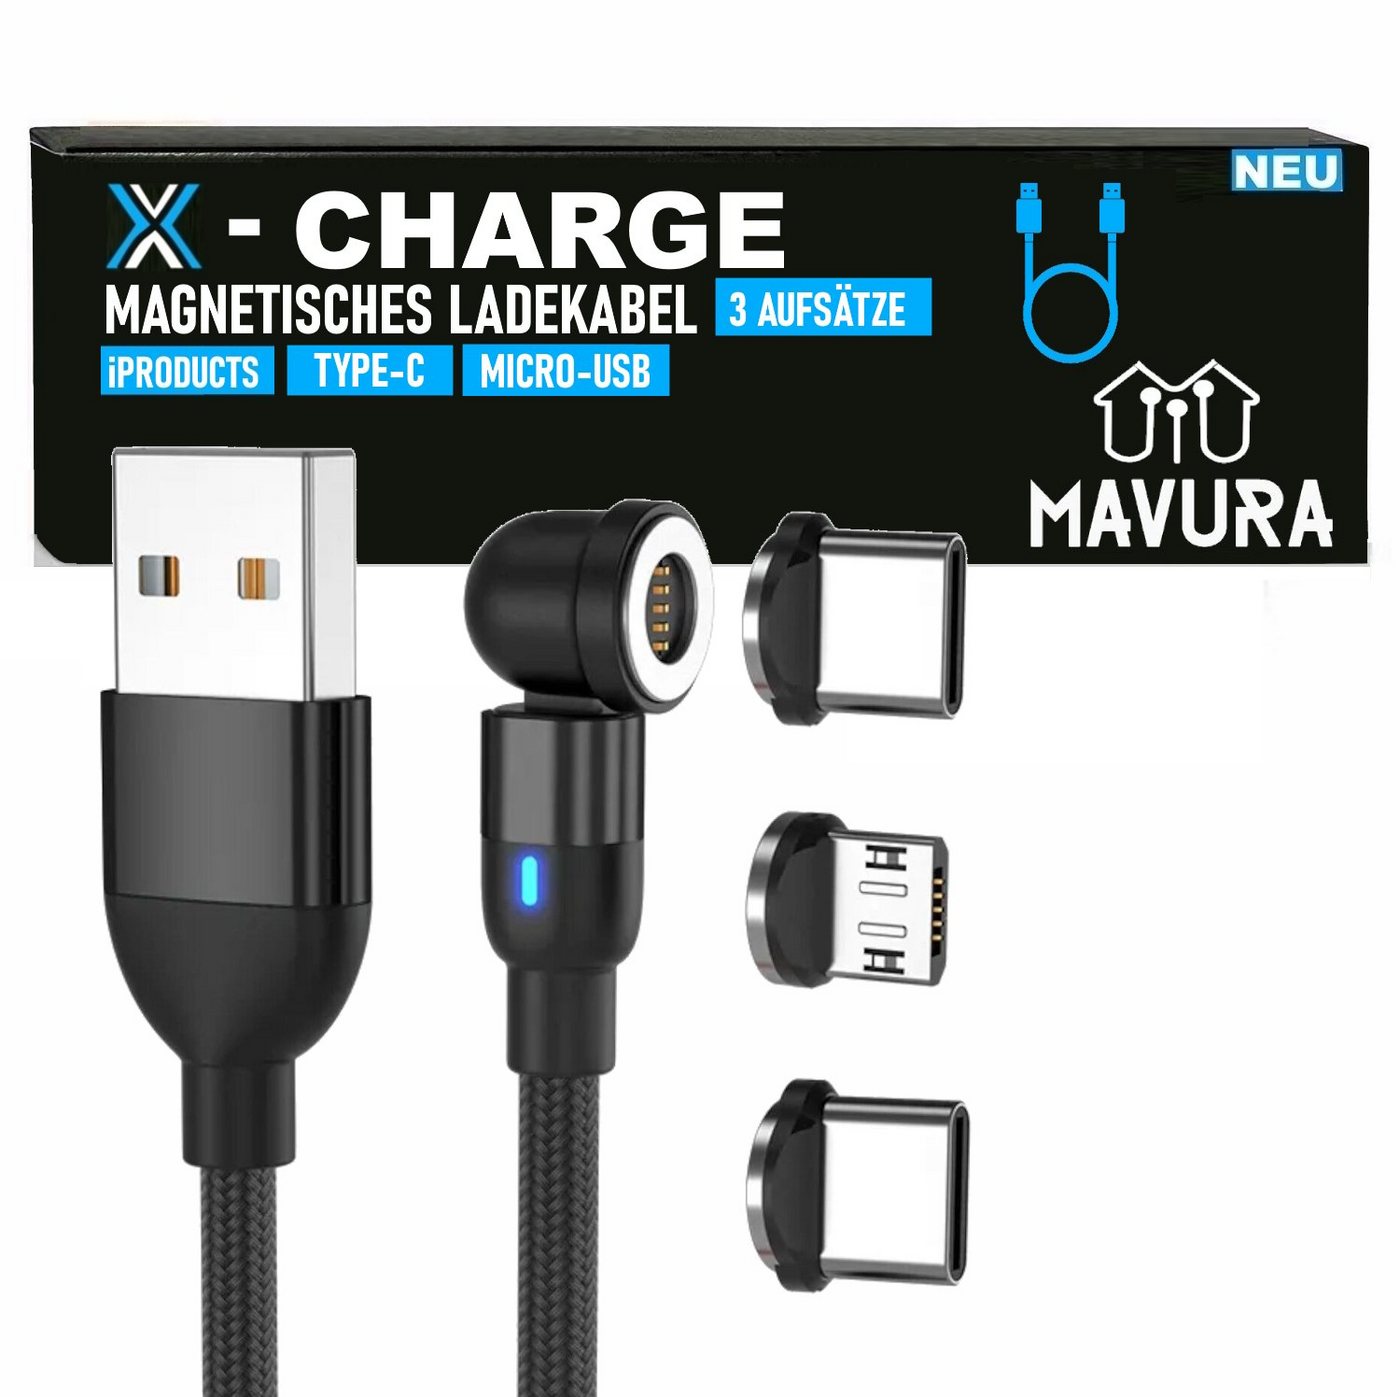 MAVURA X-CHARGE USB 360° Schnelladekabel 3 Adapter Magnet Rotation magnetisches Ladekabel, Ladekabel Type C Micro USB iProducts (für iPhone, iPad, etc) von MAVURA